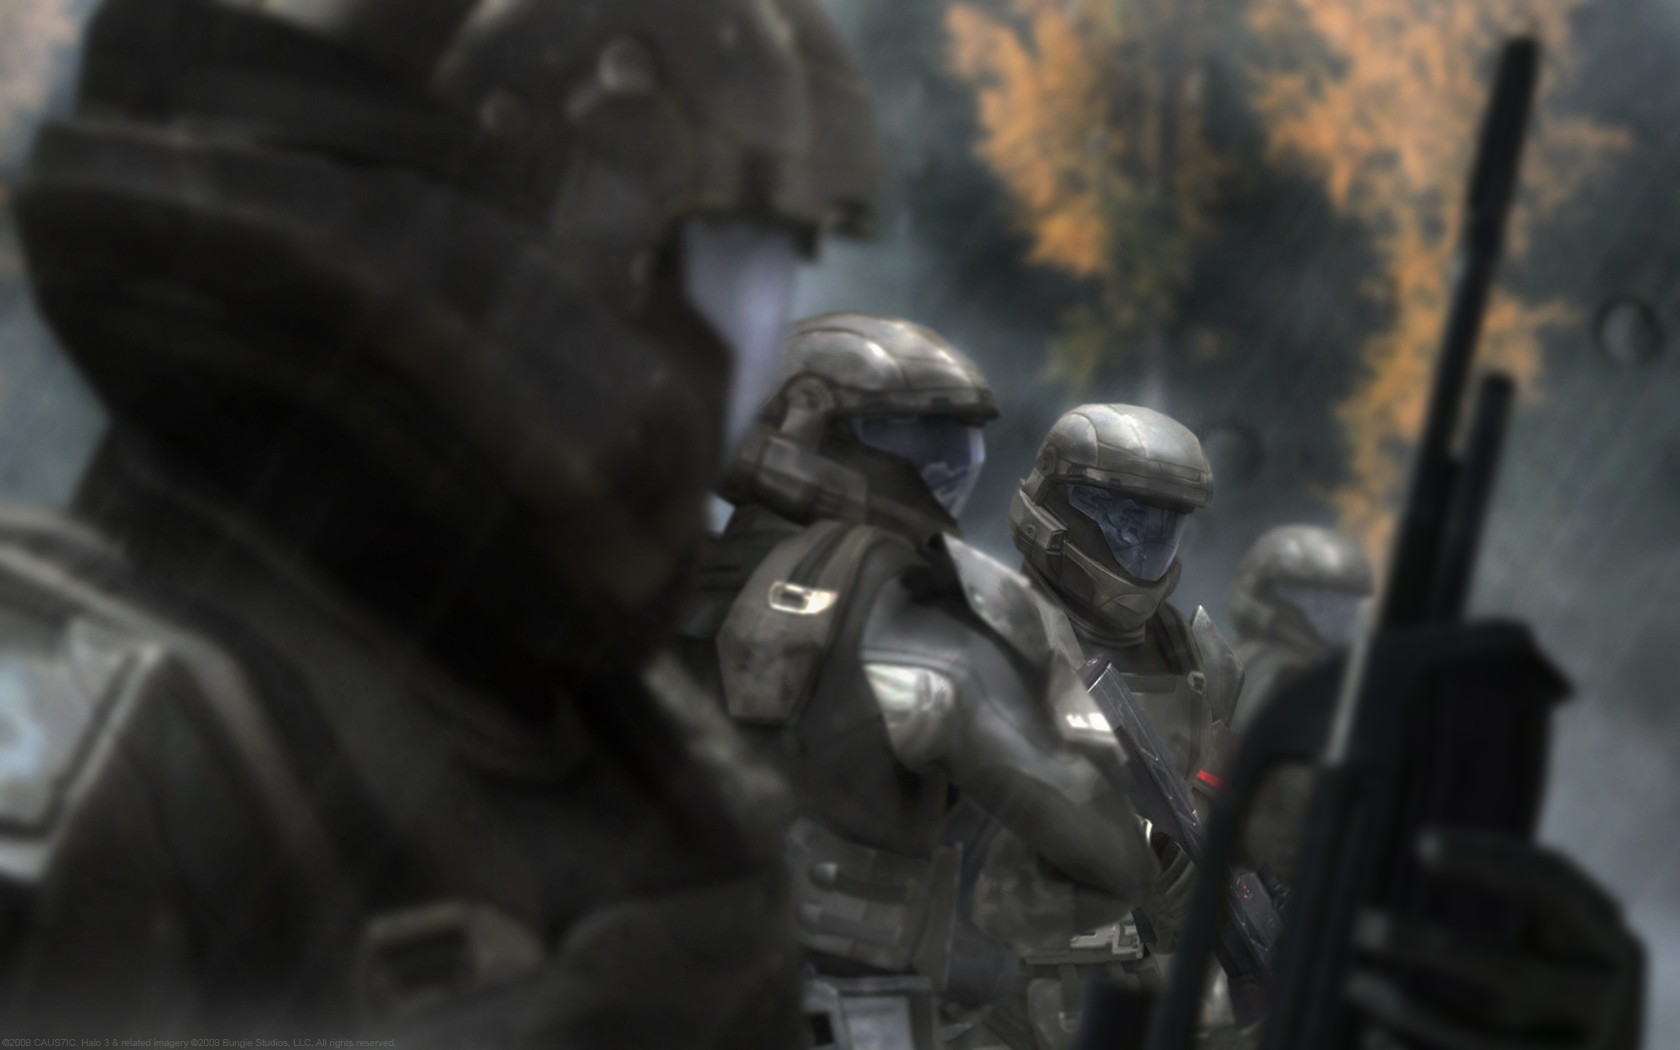 Halo odst Halo 3 ODST HD wallpaper  Pxfuel